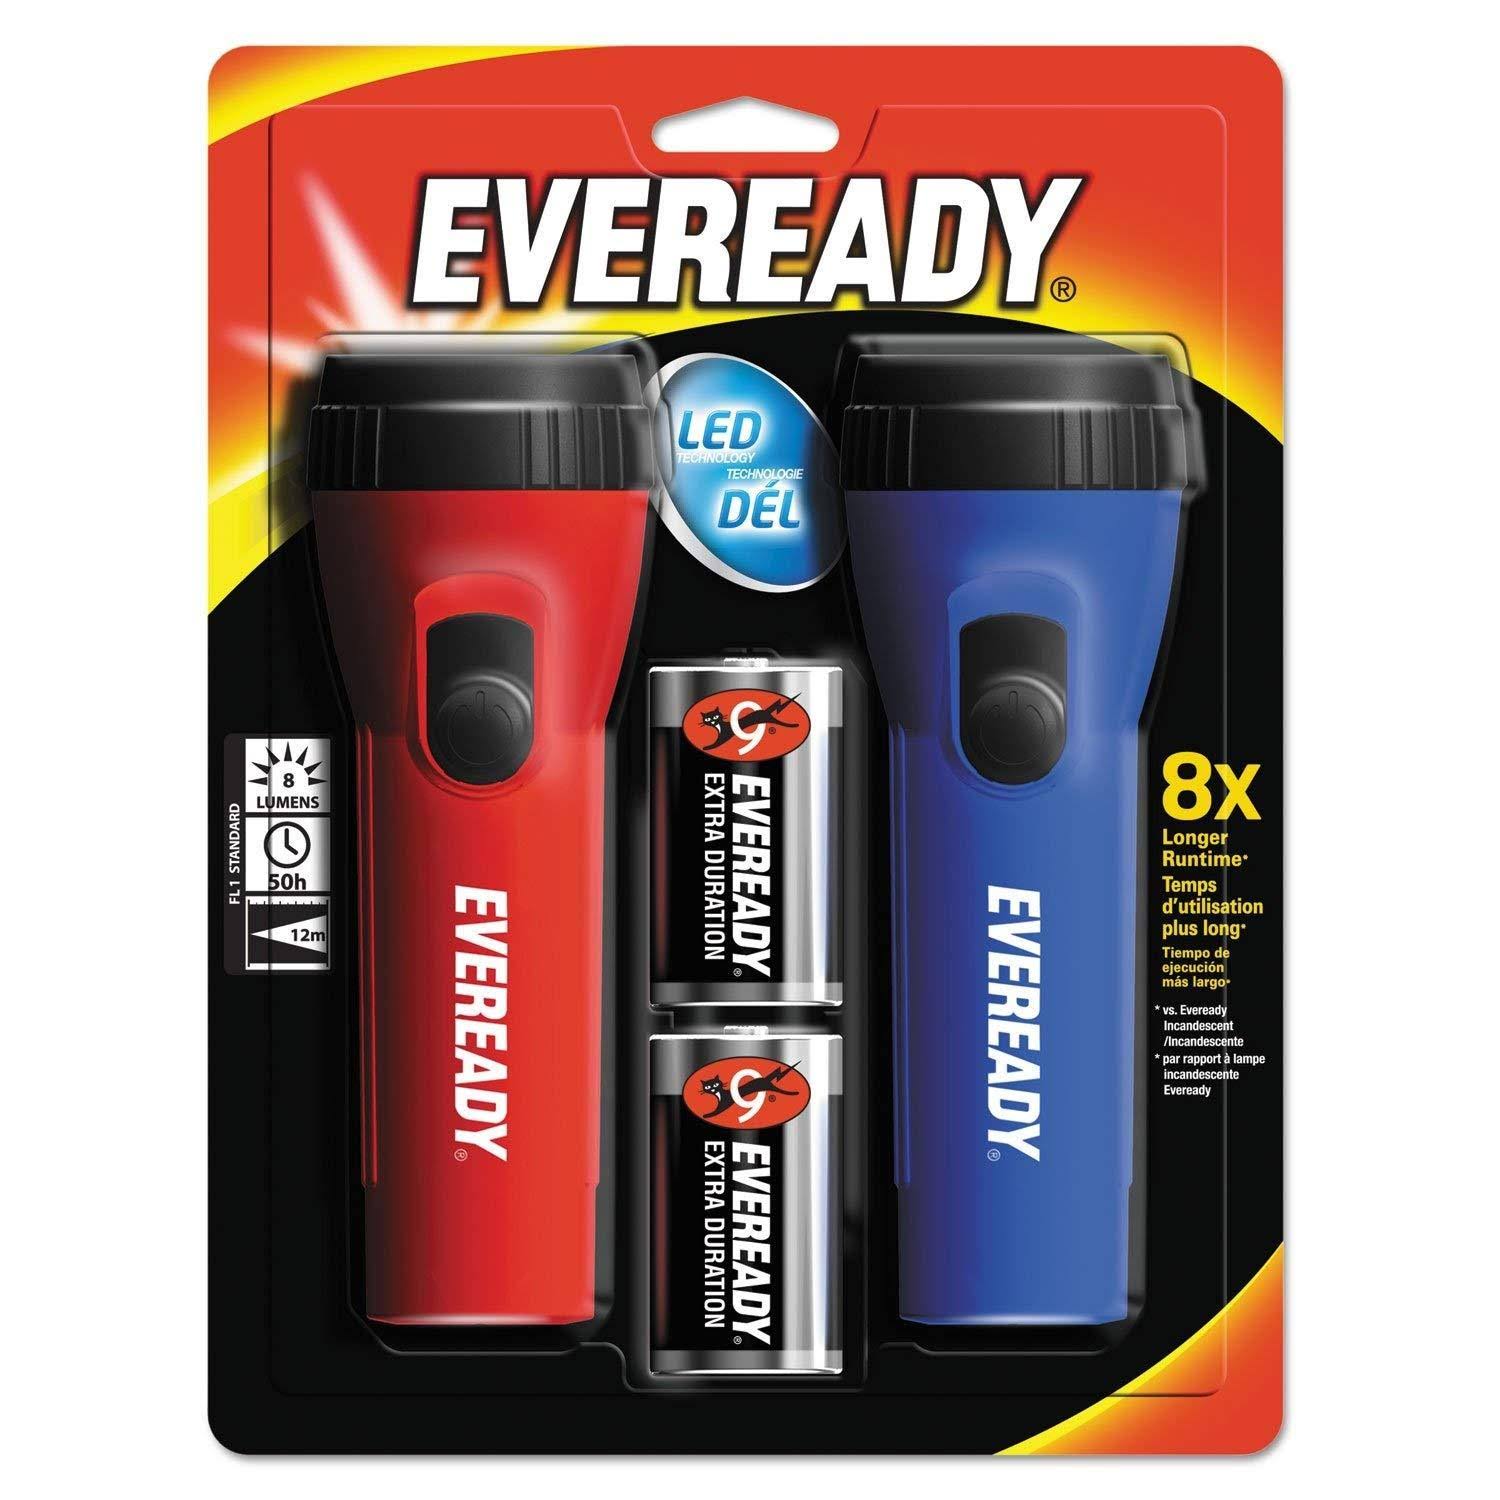 Eveready Economy LED Flashlight - 2 Pack